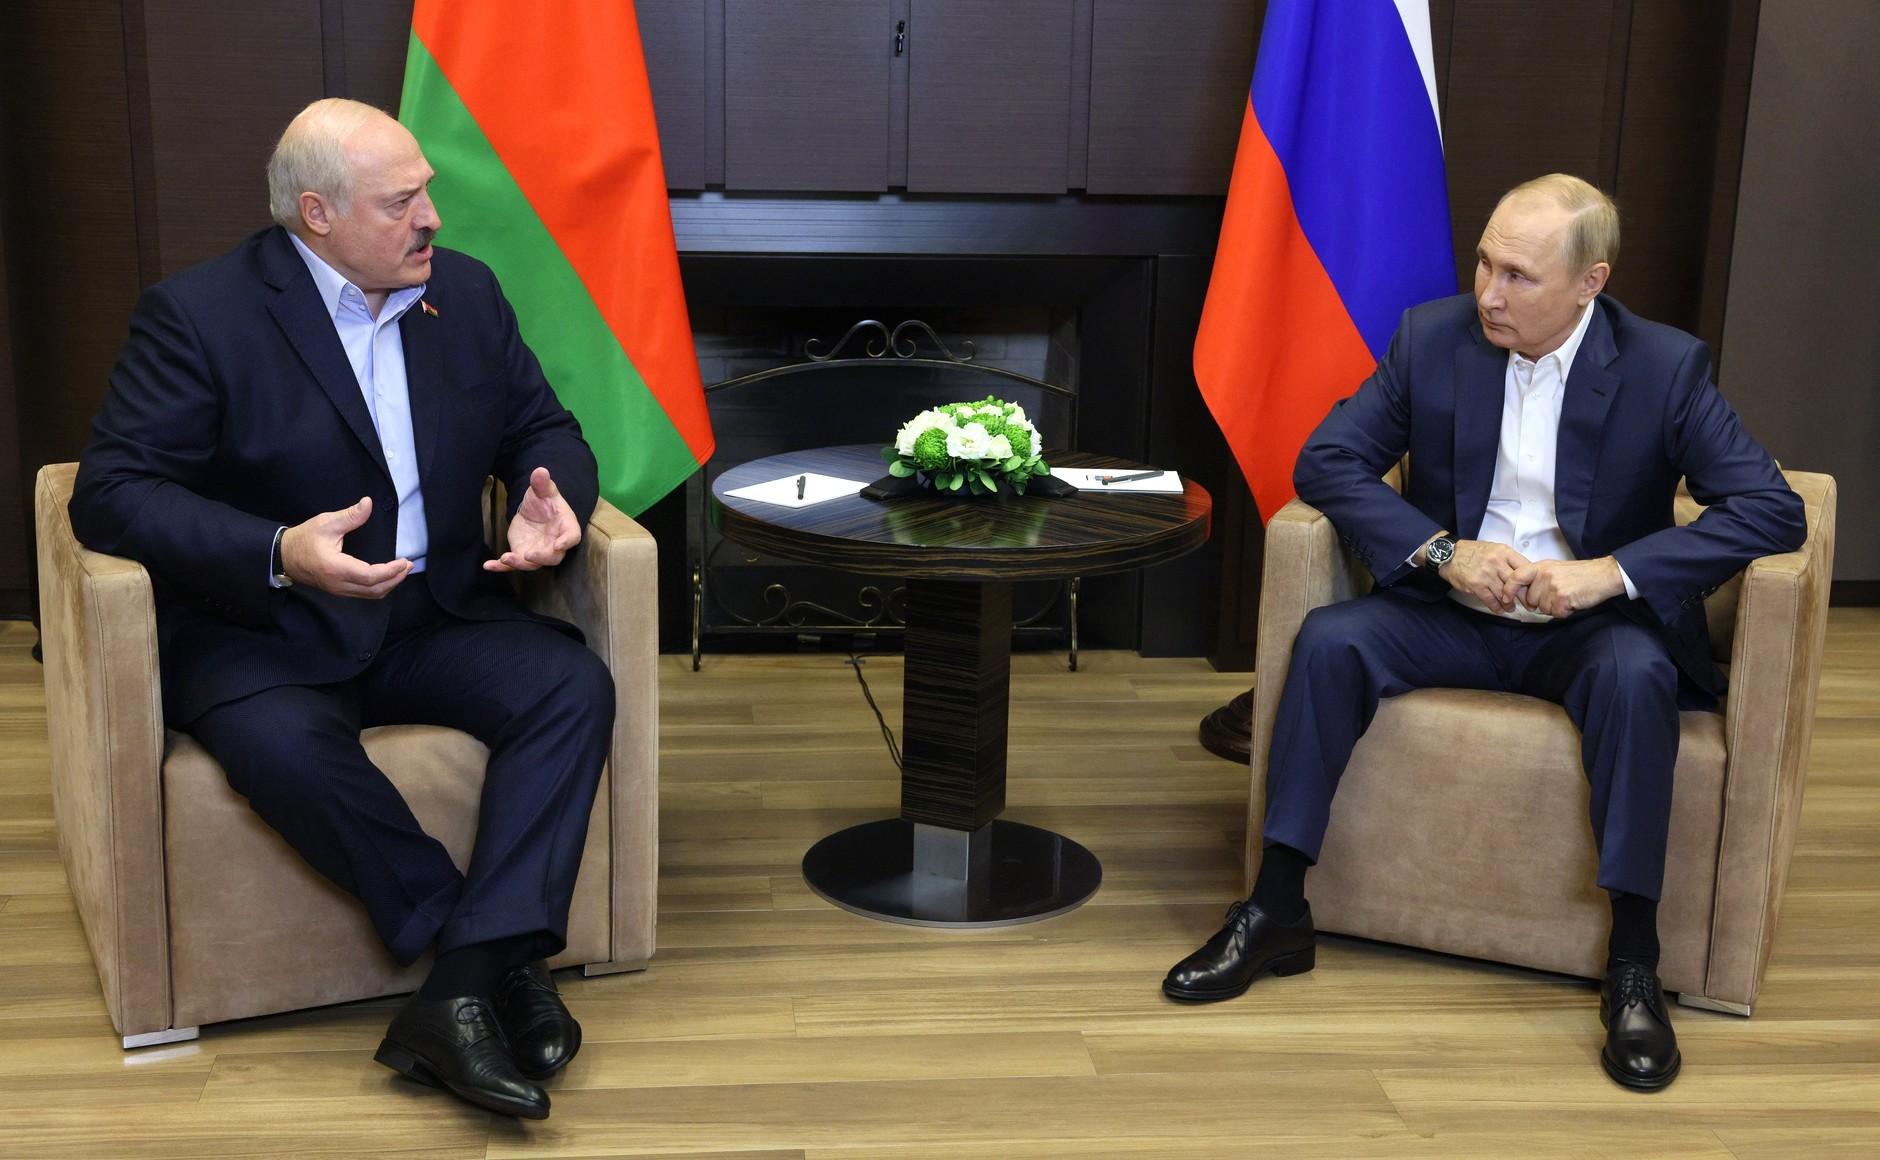 Zanimljiv sastanak: Lukašenko pričao Putinu o Rusima koji bježe, pogledajte reakciju ruskog predsjednika